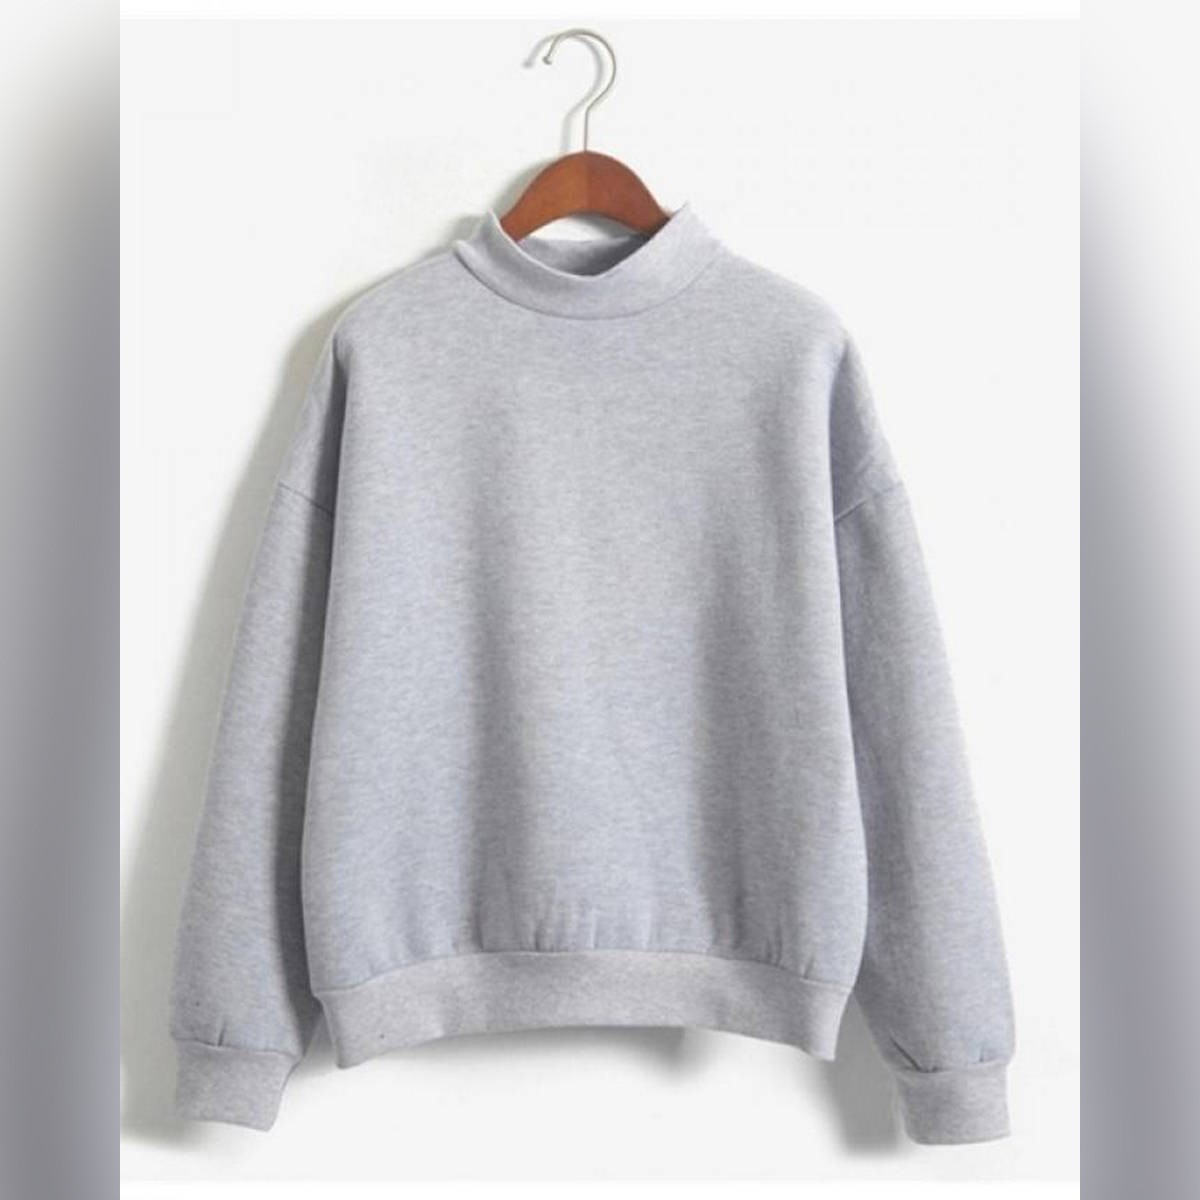 Sweatshirt 2018 Winter Casual Loose Fleece Pullover Grey